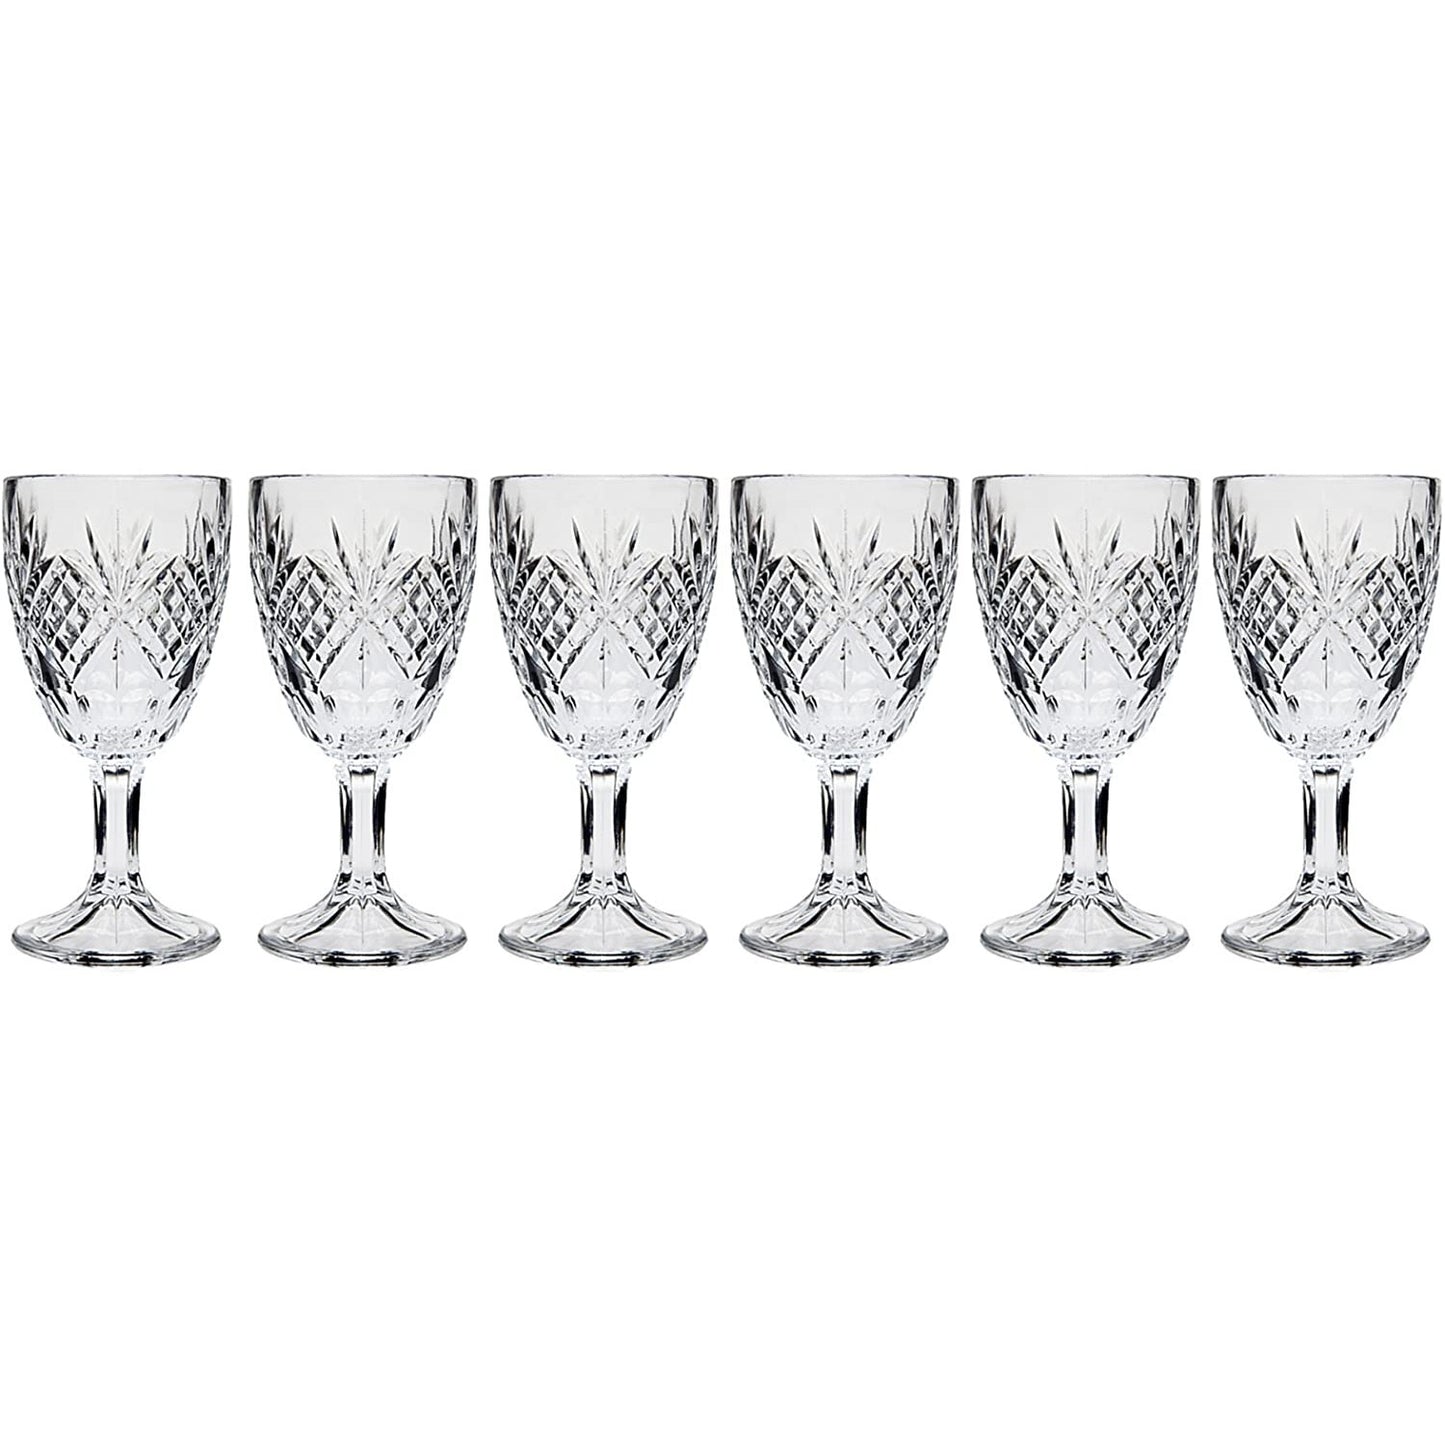 Godinger Dublin Set of 6 Cordial Glasses